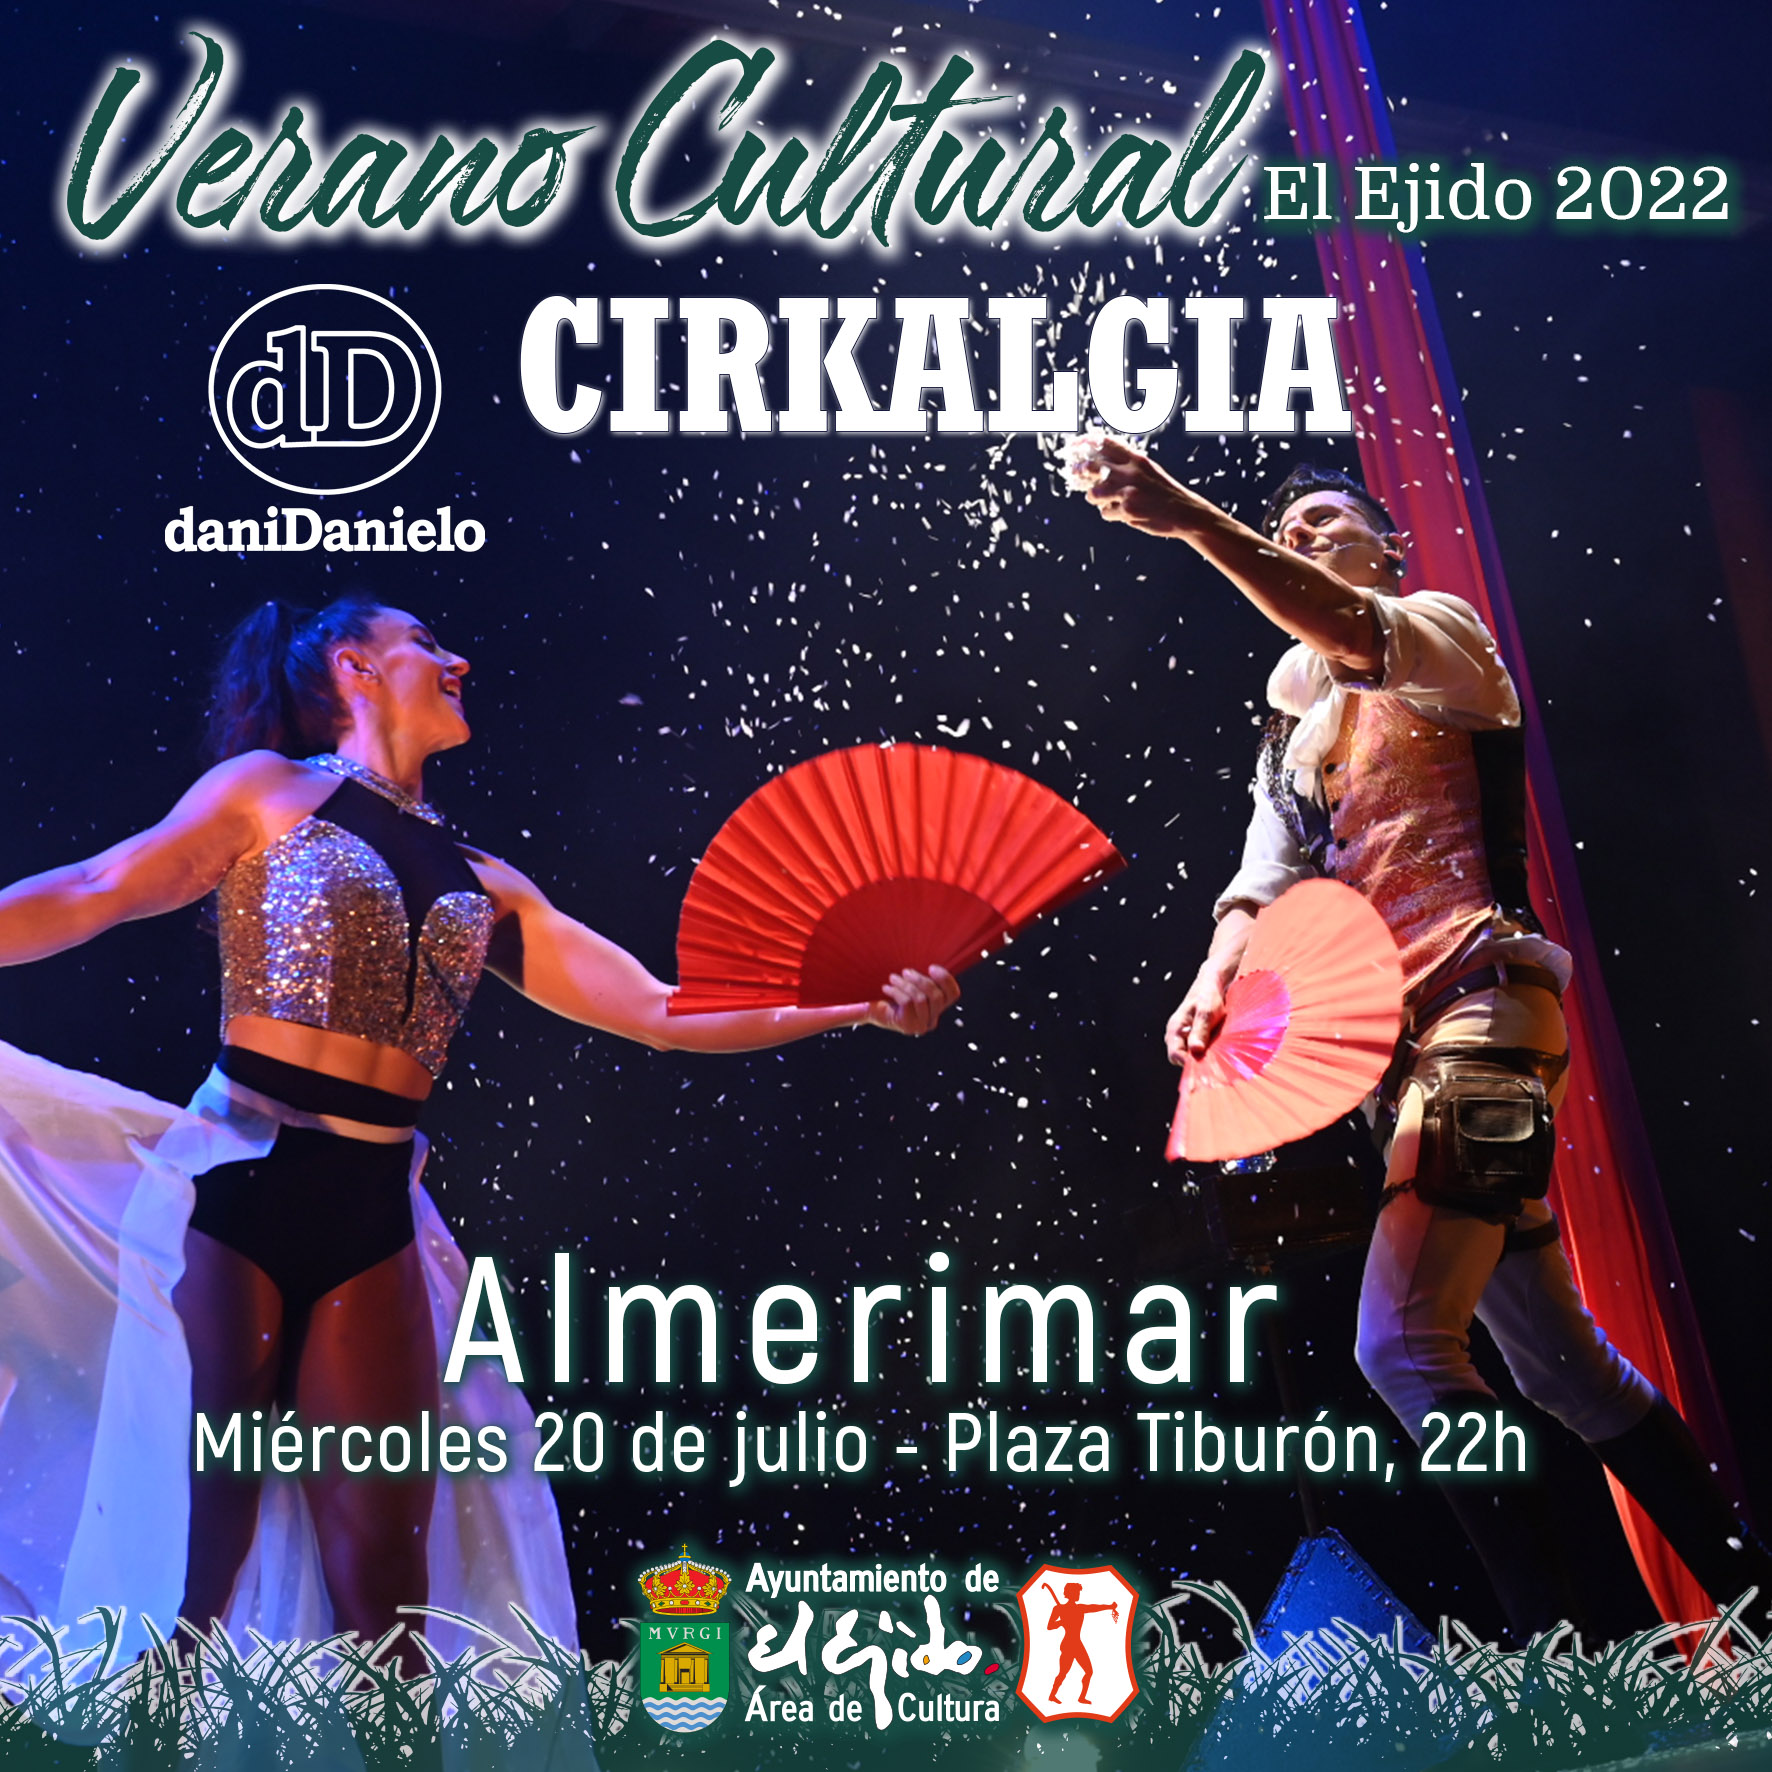 Verano Cultural 2022 de El Ejido – Teatro en Almerimar – Cía. daniDanielo «Cirkalgia»